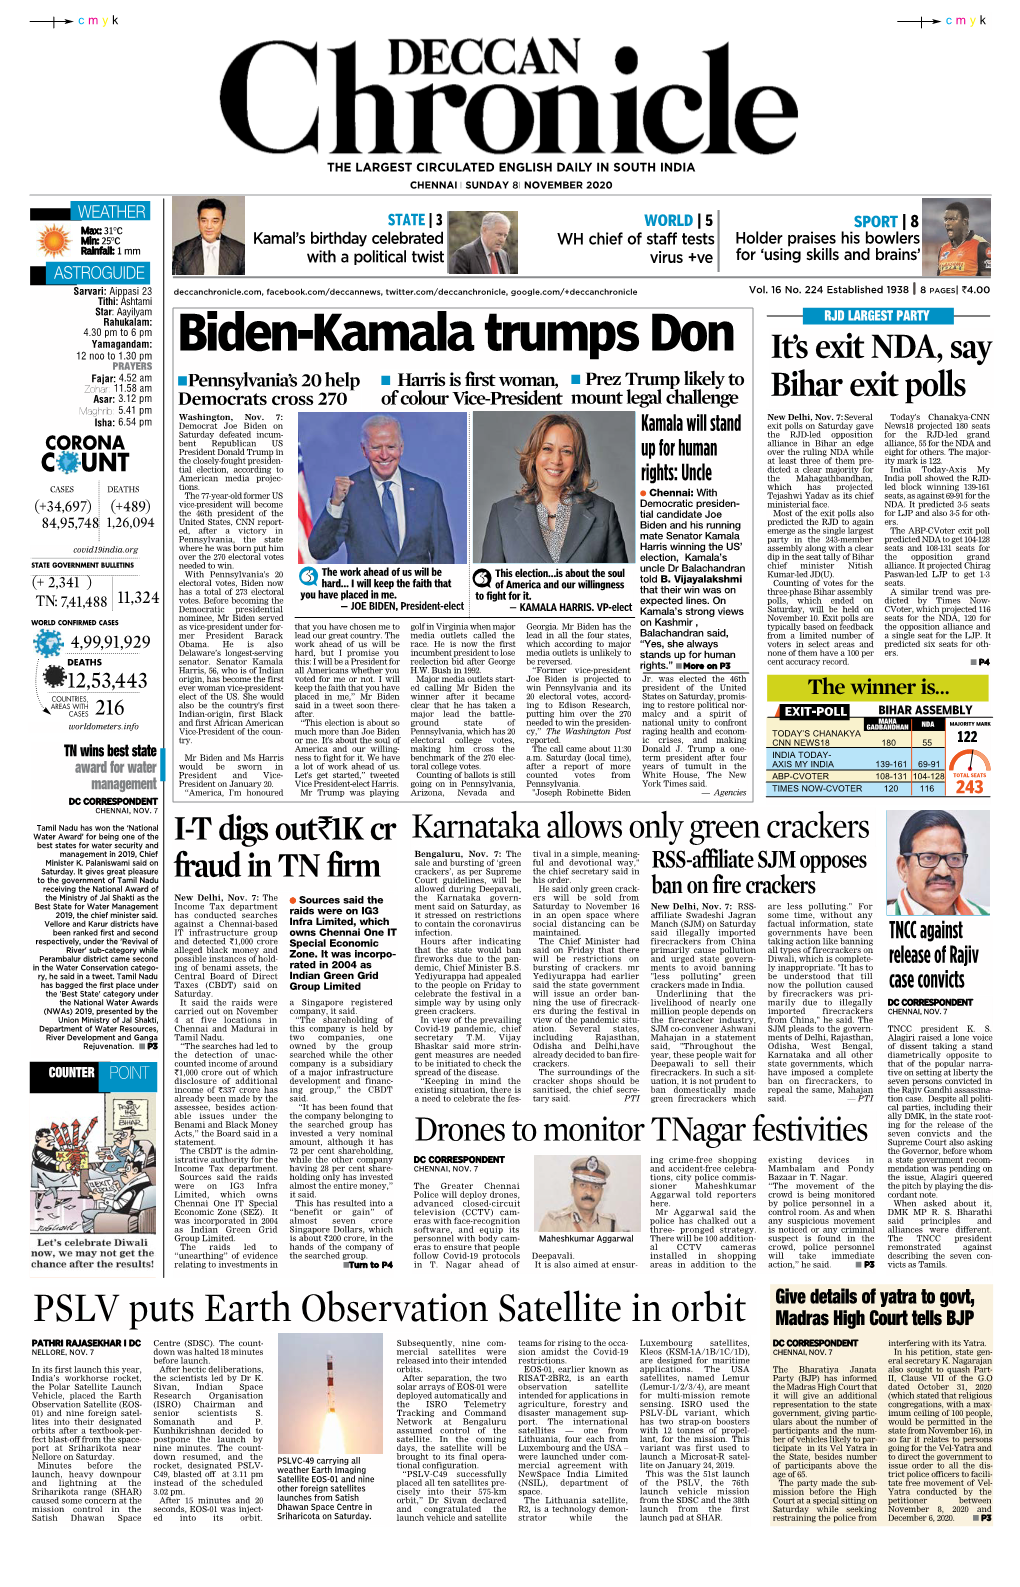 Biden-Kamala Trumps